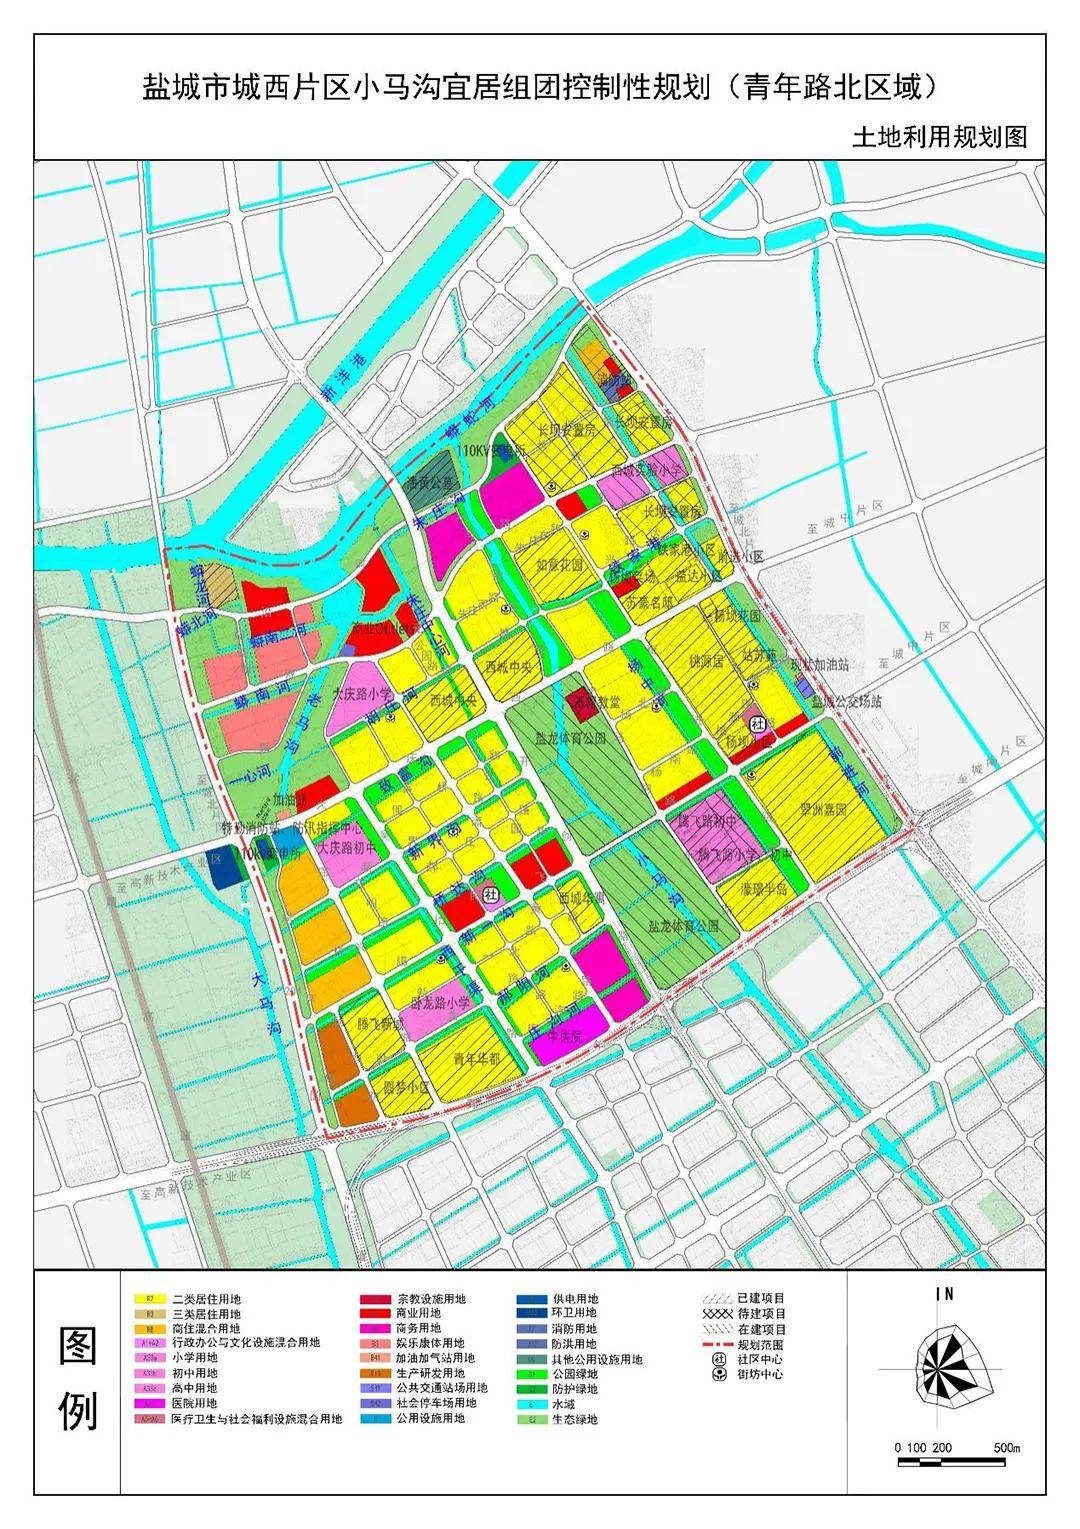 根据之前公开的《盐城市城西片区控制性详细规划》,板块内还 规划了